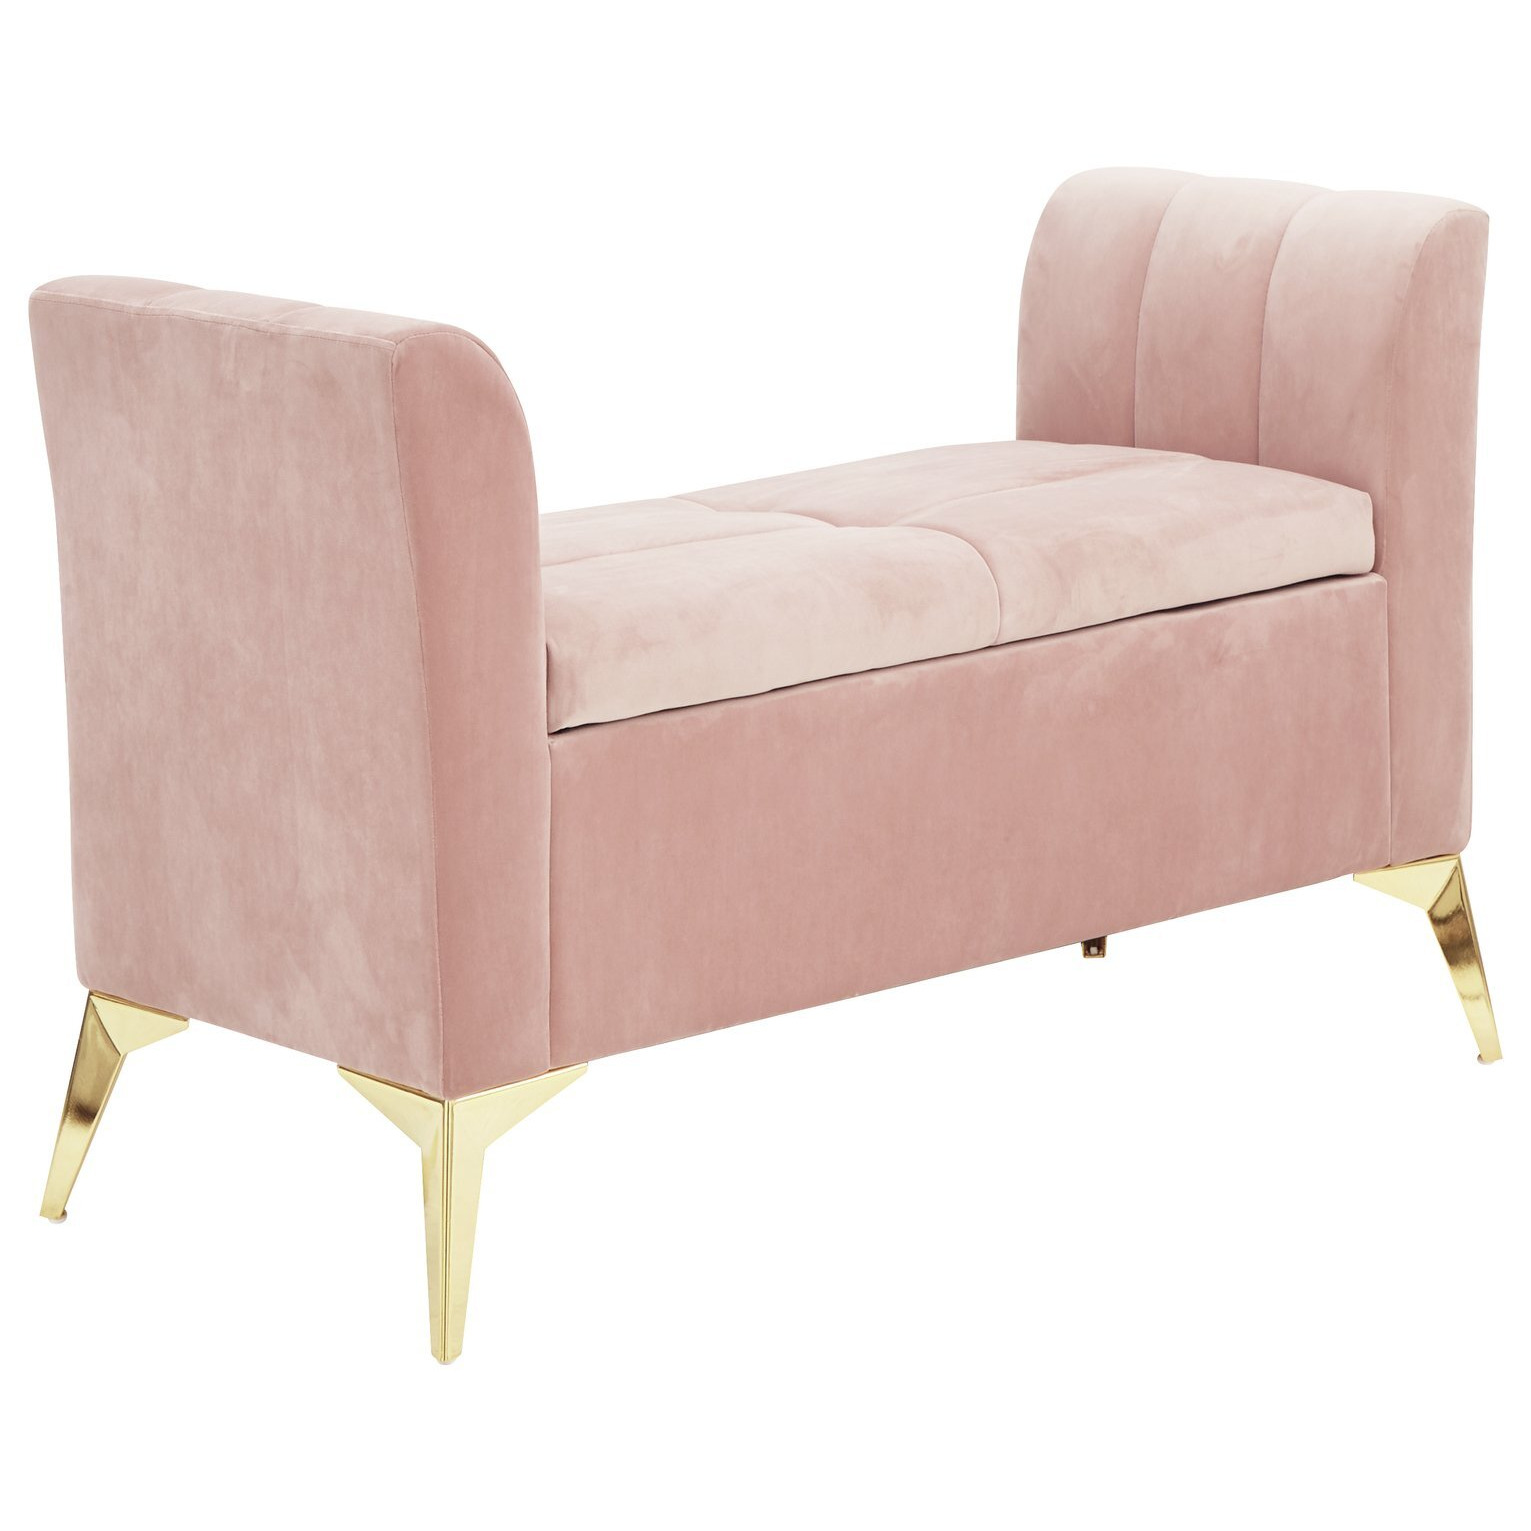 GFW Pettine Fabric Ottoman Storage Bench - Blush Pink - image 1